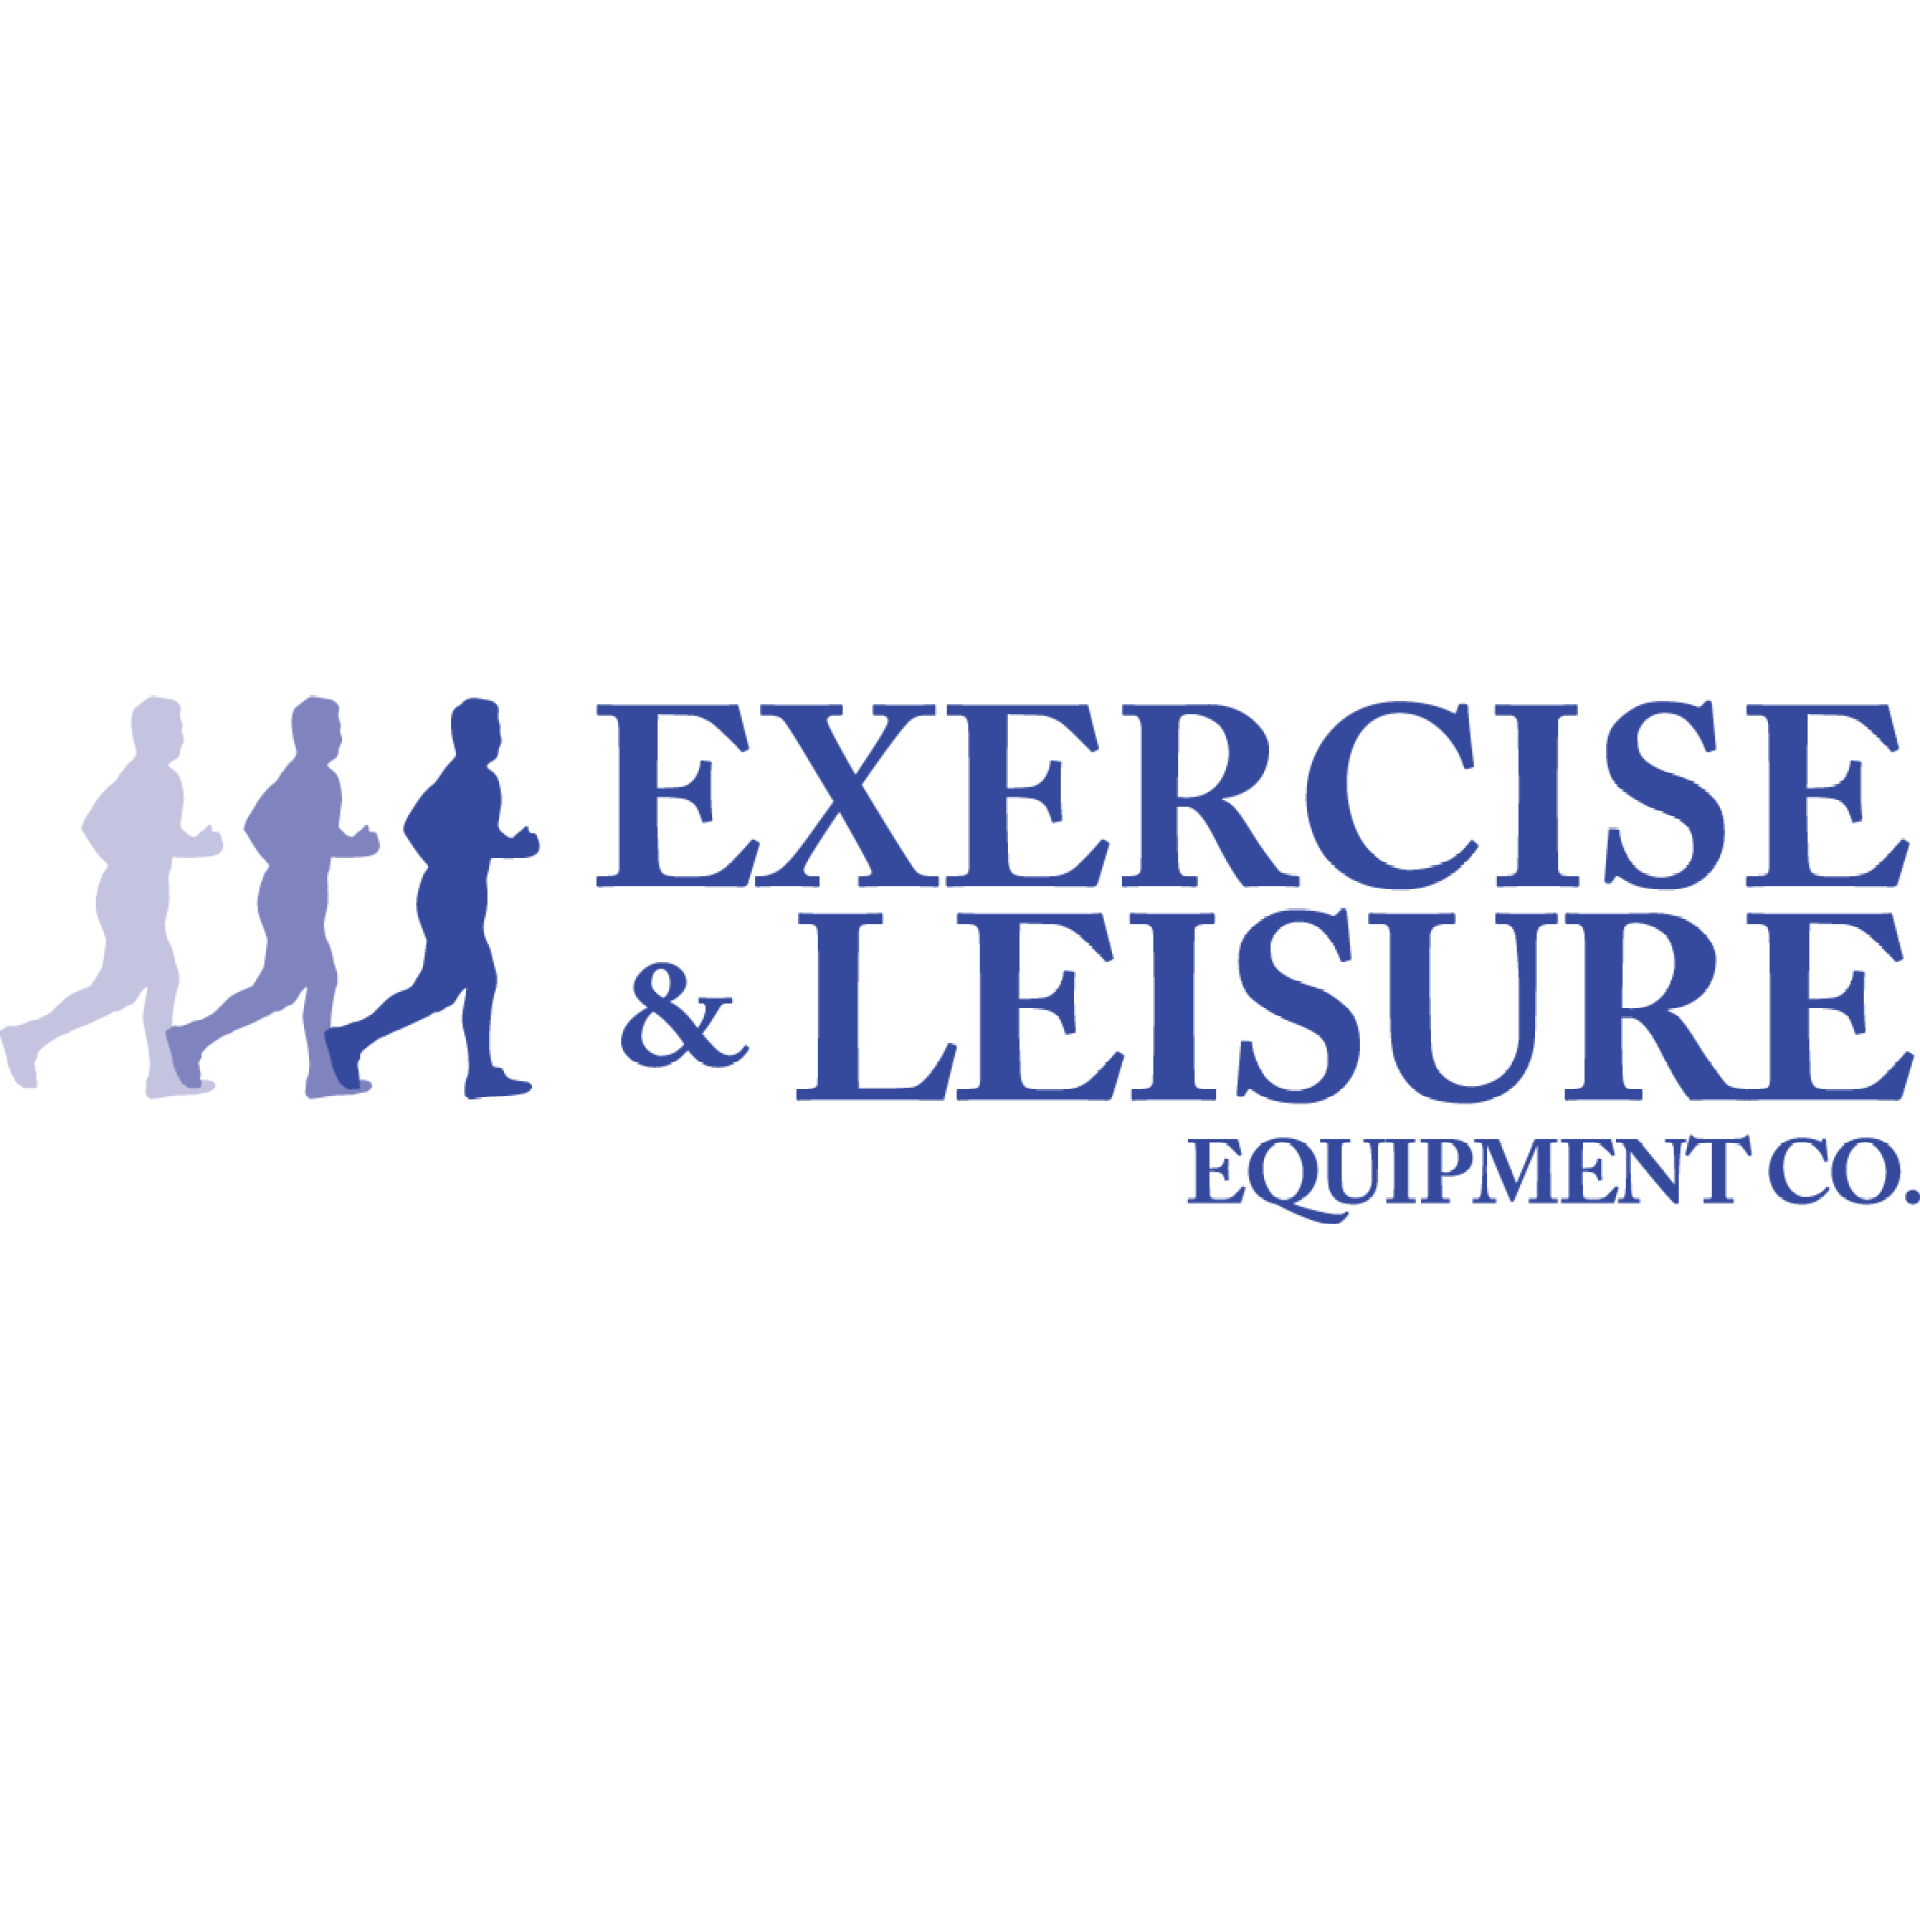 Exercise & Leisure Equipment Co Cincinnati (513)531-7777